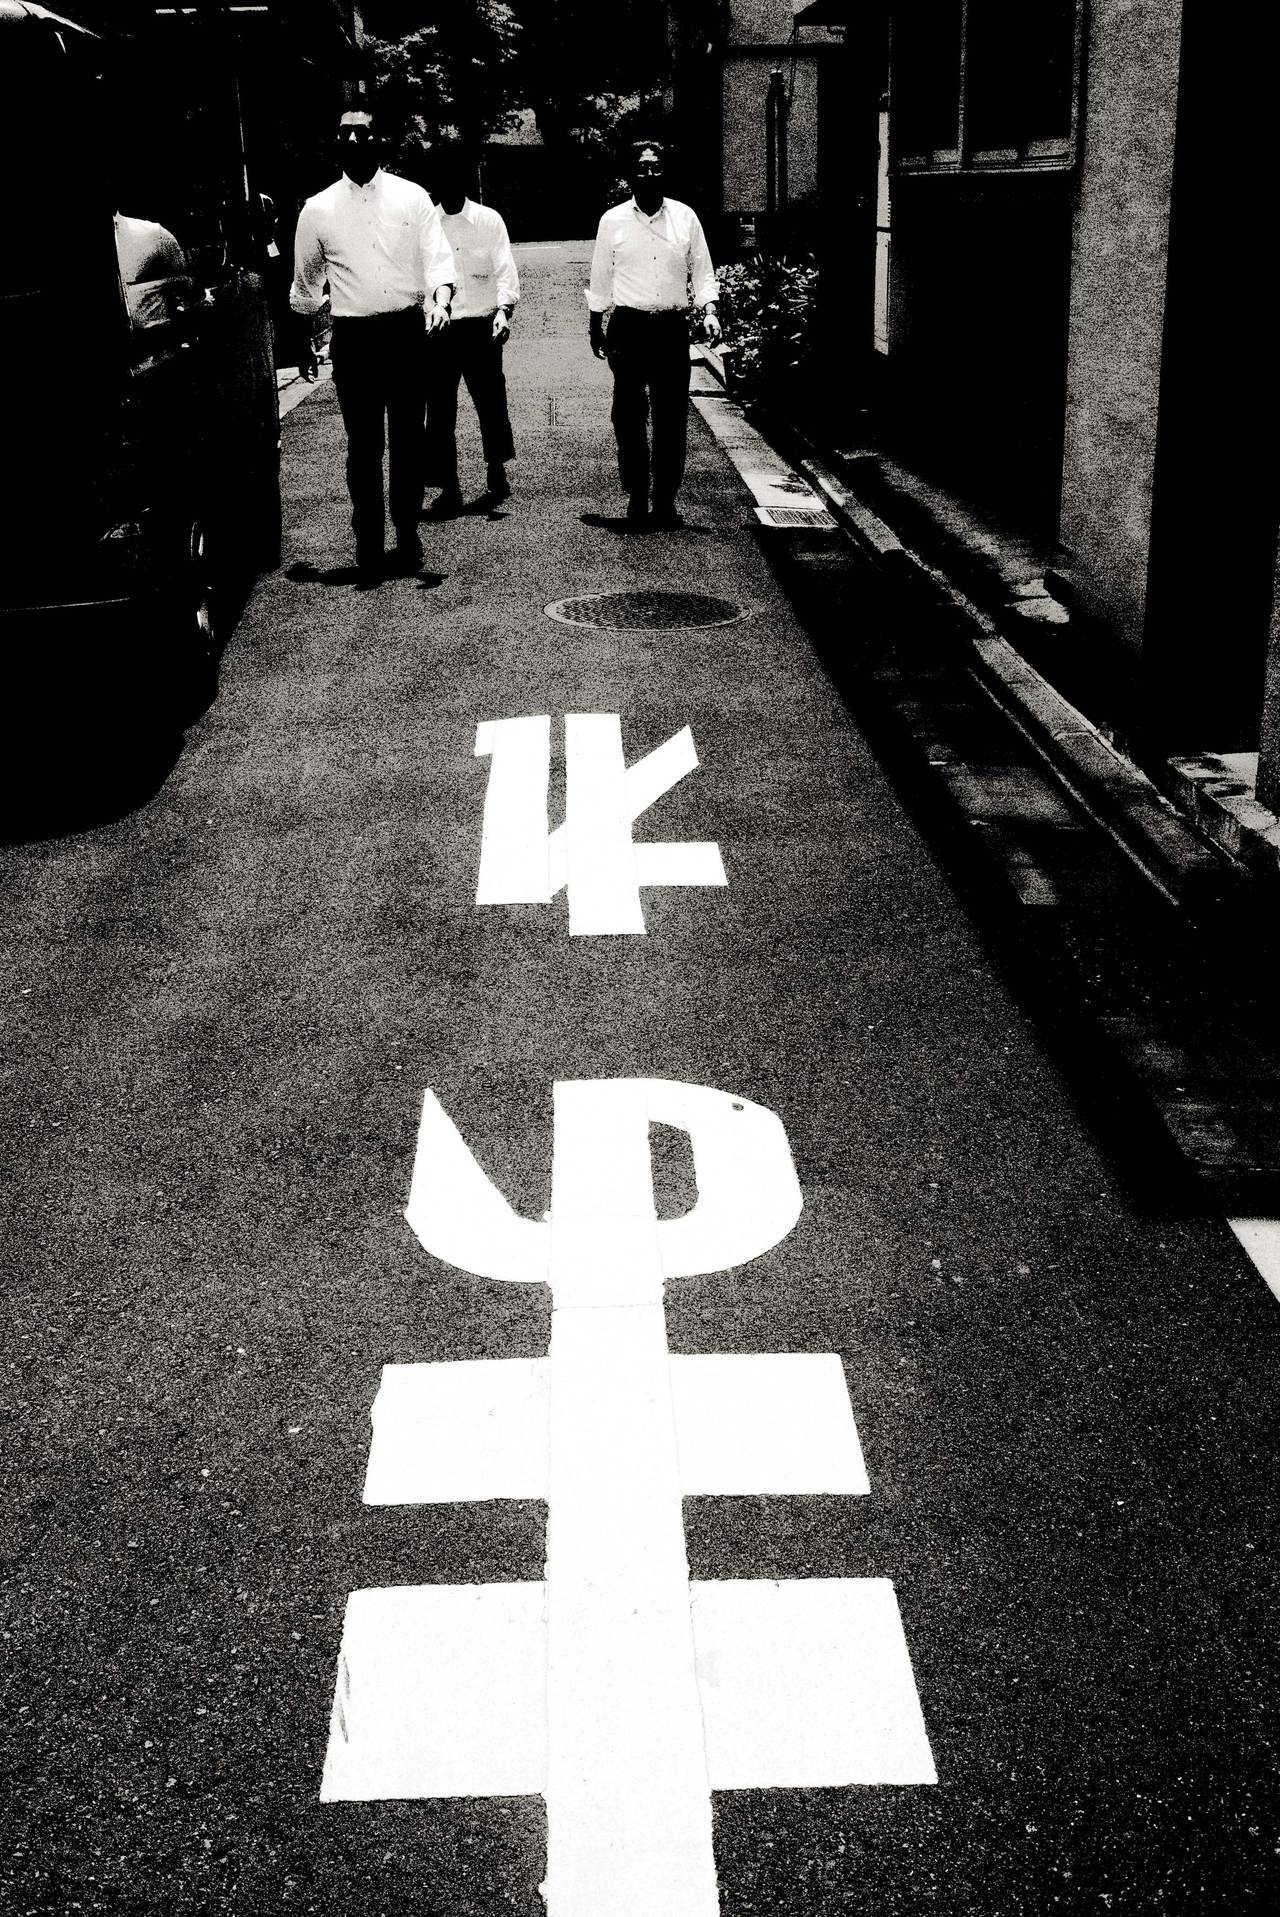 Andreas H. Bitesnich Still-Life Photograph – Drei Männer beim Spaziergang, Tokio – auf den Straßen in Japan, mit darauf gemalten Schildern